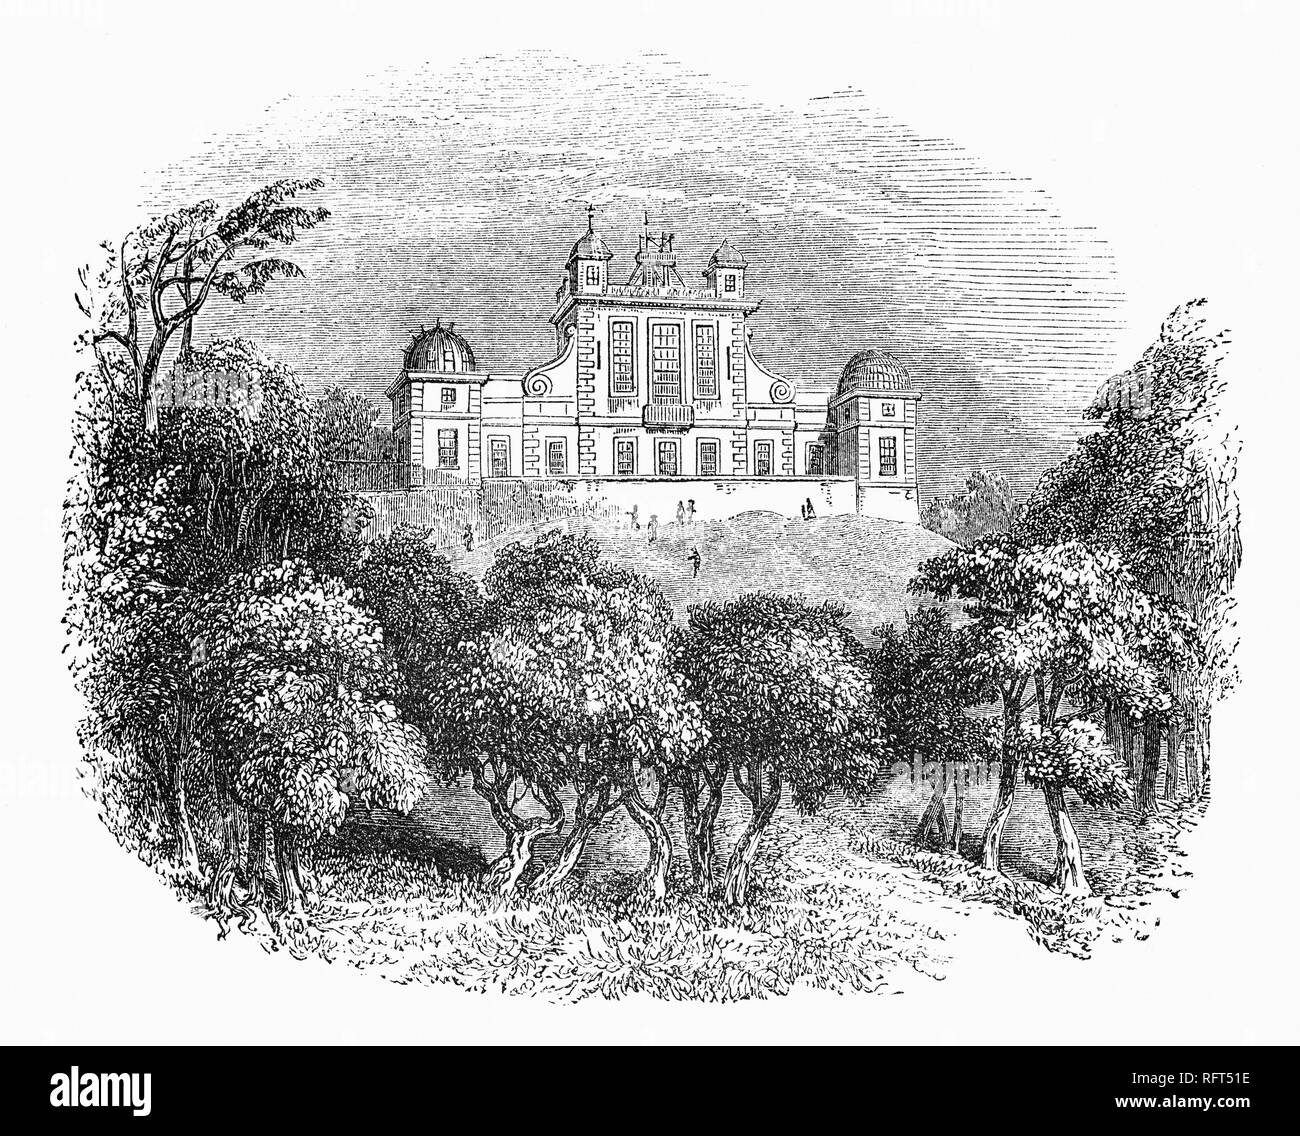 L'Observatoire Royal, est un observatoire situé sur une colline dans le parc de Greenwich, donnant sur la Tamise. Il a joué un rôle majeur dans l'histoire de l'astronomie et la navigation, et est surtout connu pour le fait que le premier méridien passe à travers elle, et ce qui a donné son nom à l'heure de Greenwich. L'observatoire a été commandée en 1675 par le roi Charles II, sur un site choisi par Sir Christopher Wren. A cette époque, le roi a également créé le poste d'Astronome Royal John Flamsteed, nommer comme premier Astronome Royal. Banque D'Images